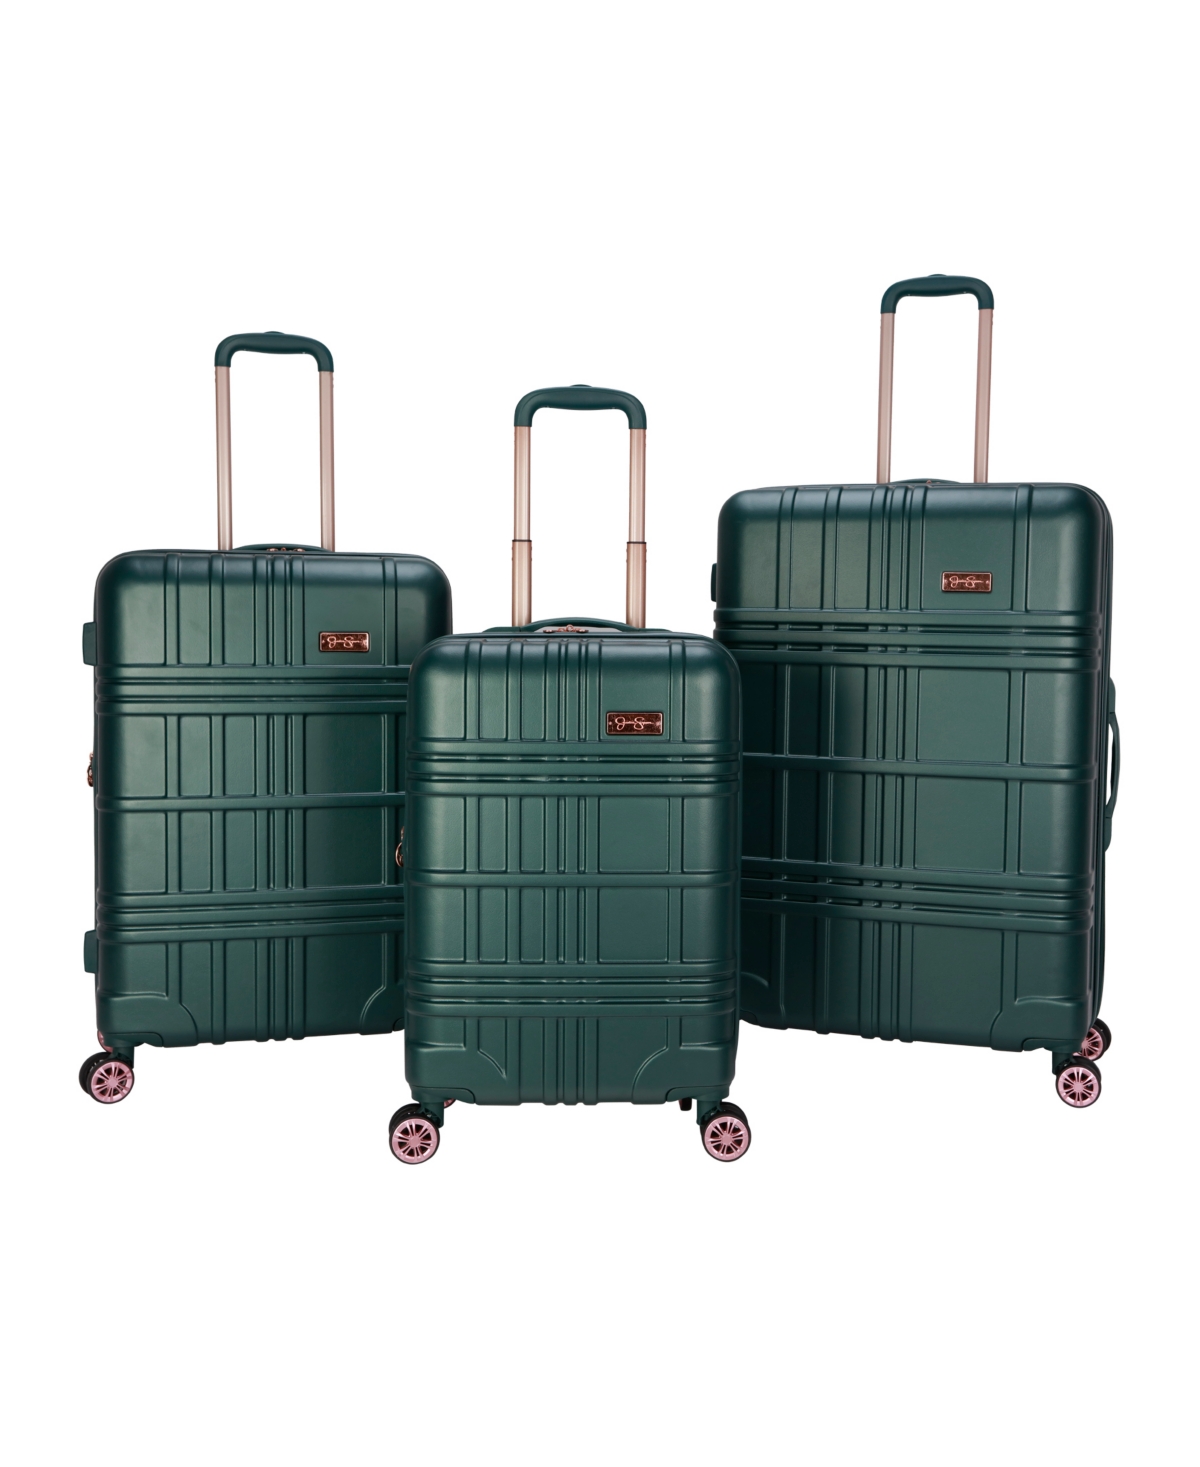 Jessica Simpson Jewel Plaid 3 Piece Hardside Luggage Set In Jade